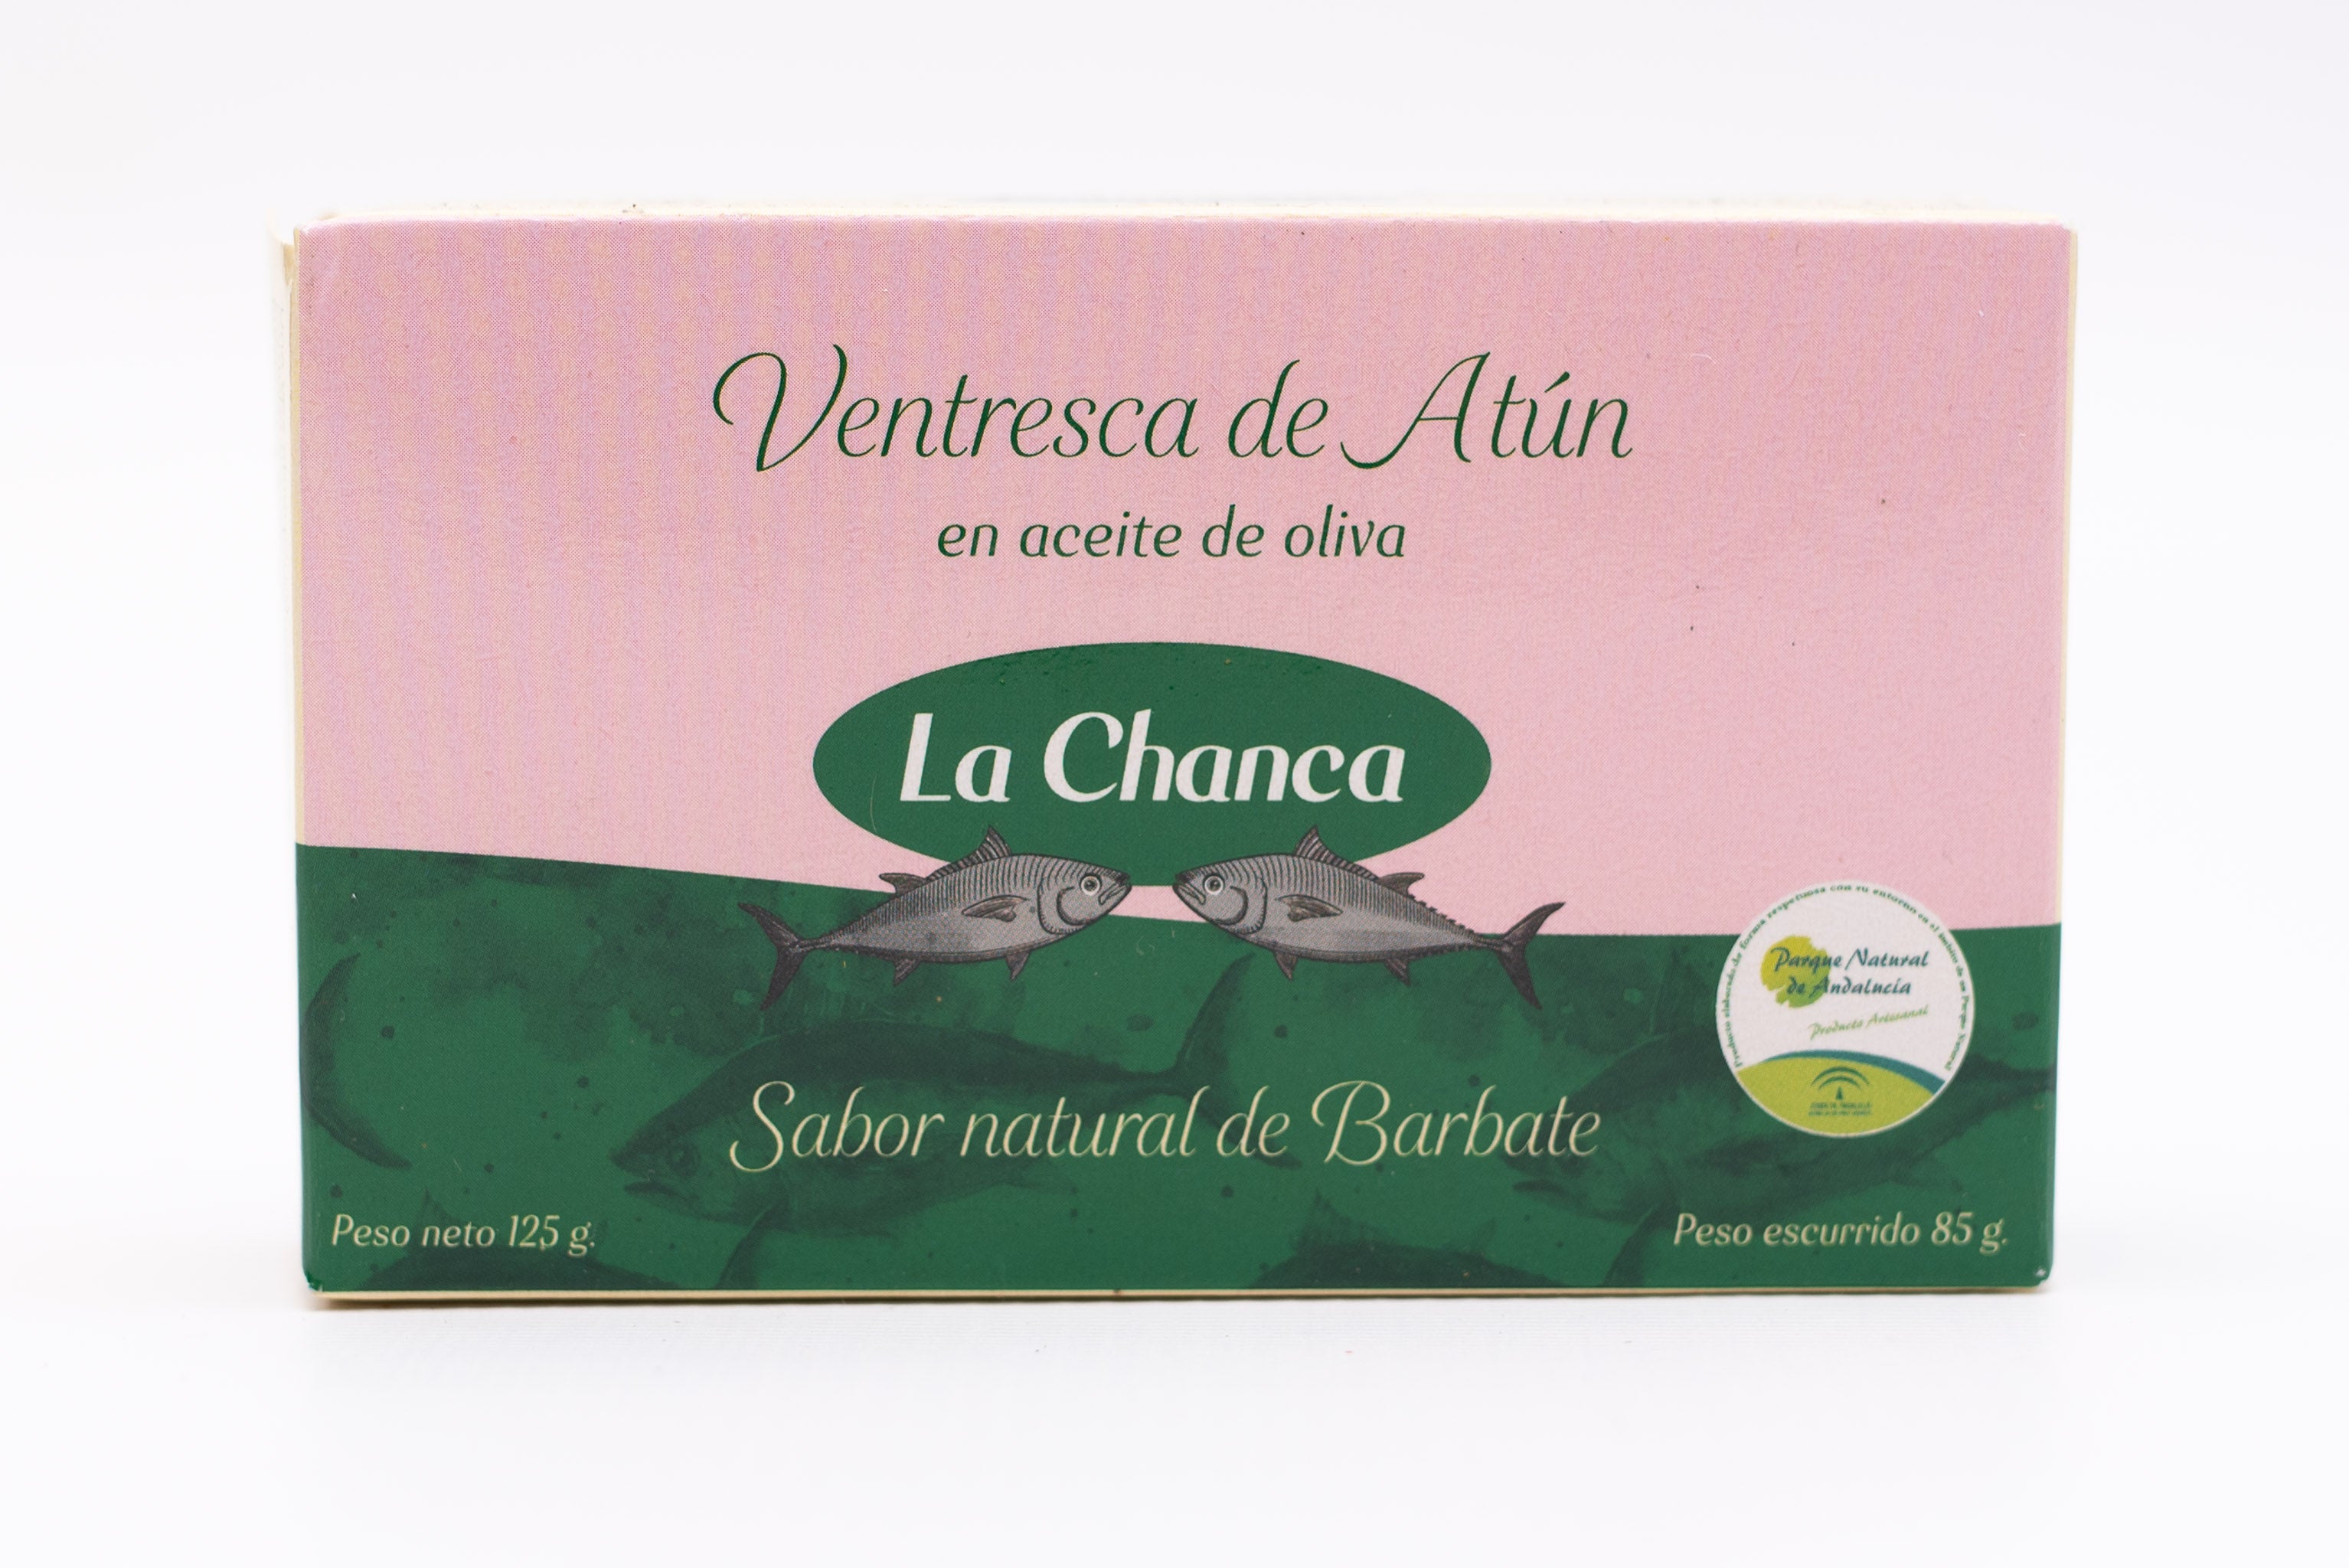 La Chanca Ventresca - Tuna Belly in Olive Oil